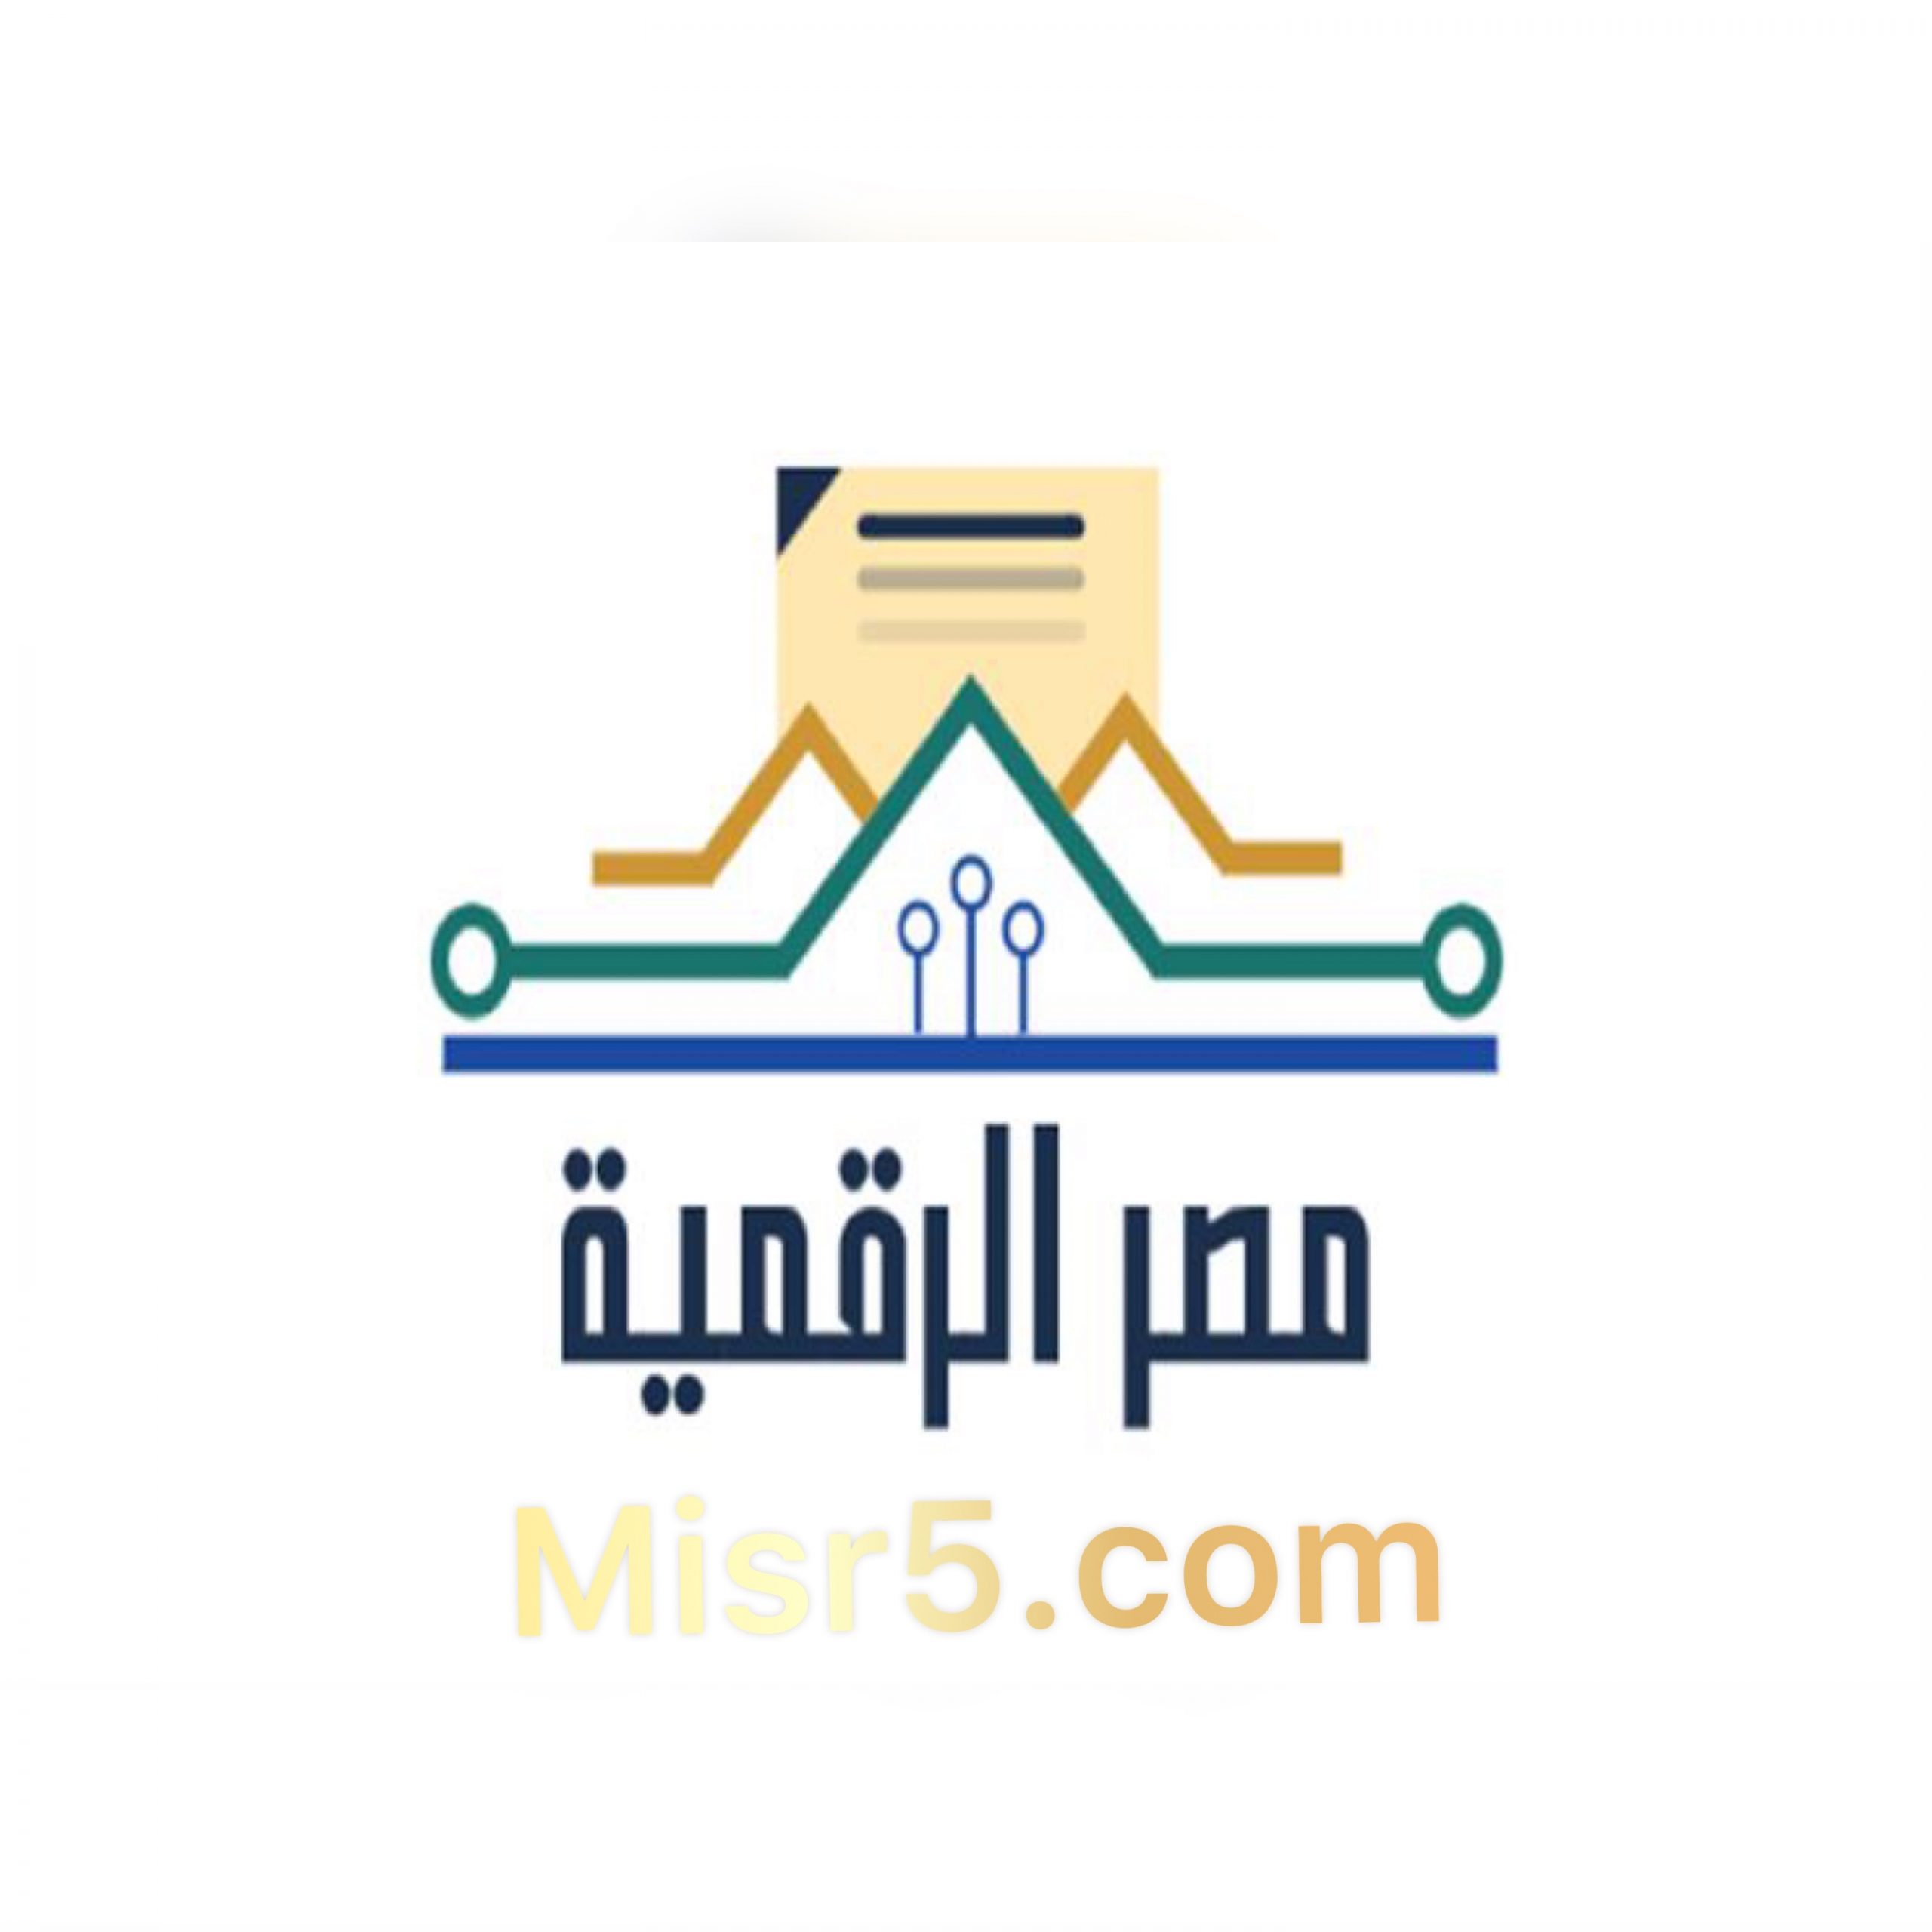 جديد بوابة مصر الرقمية | 35 خدمة حكومية إلكترونية منها خدمات الشهر العقاري والتموين